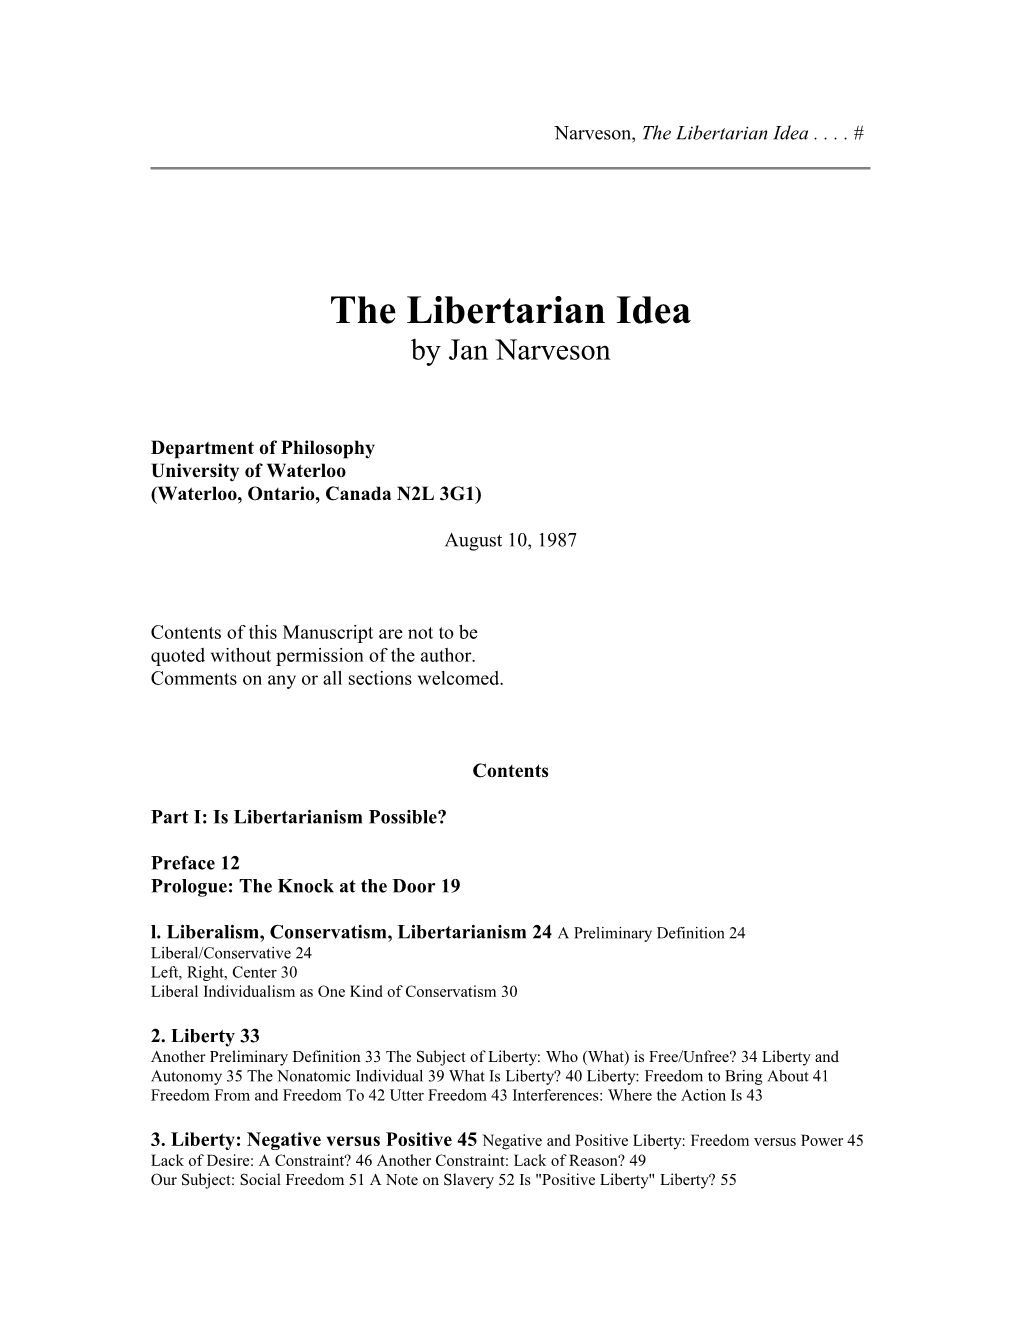 Narveson, the Libertarian Idea